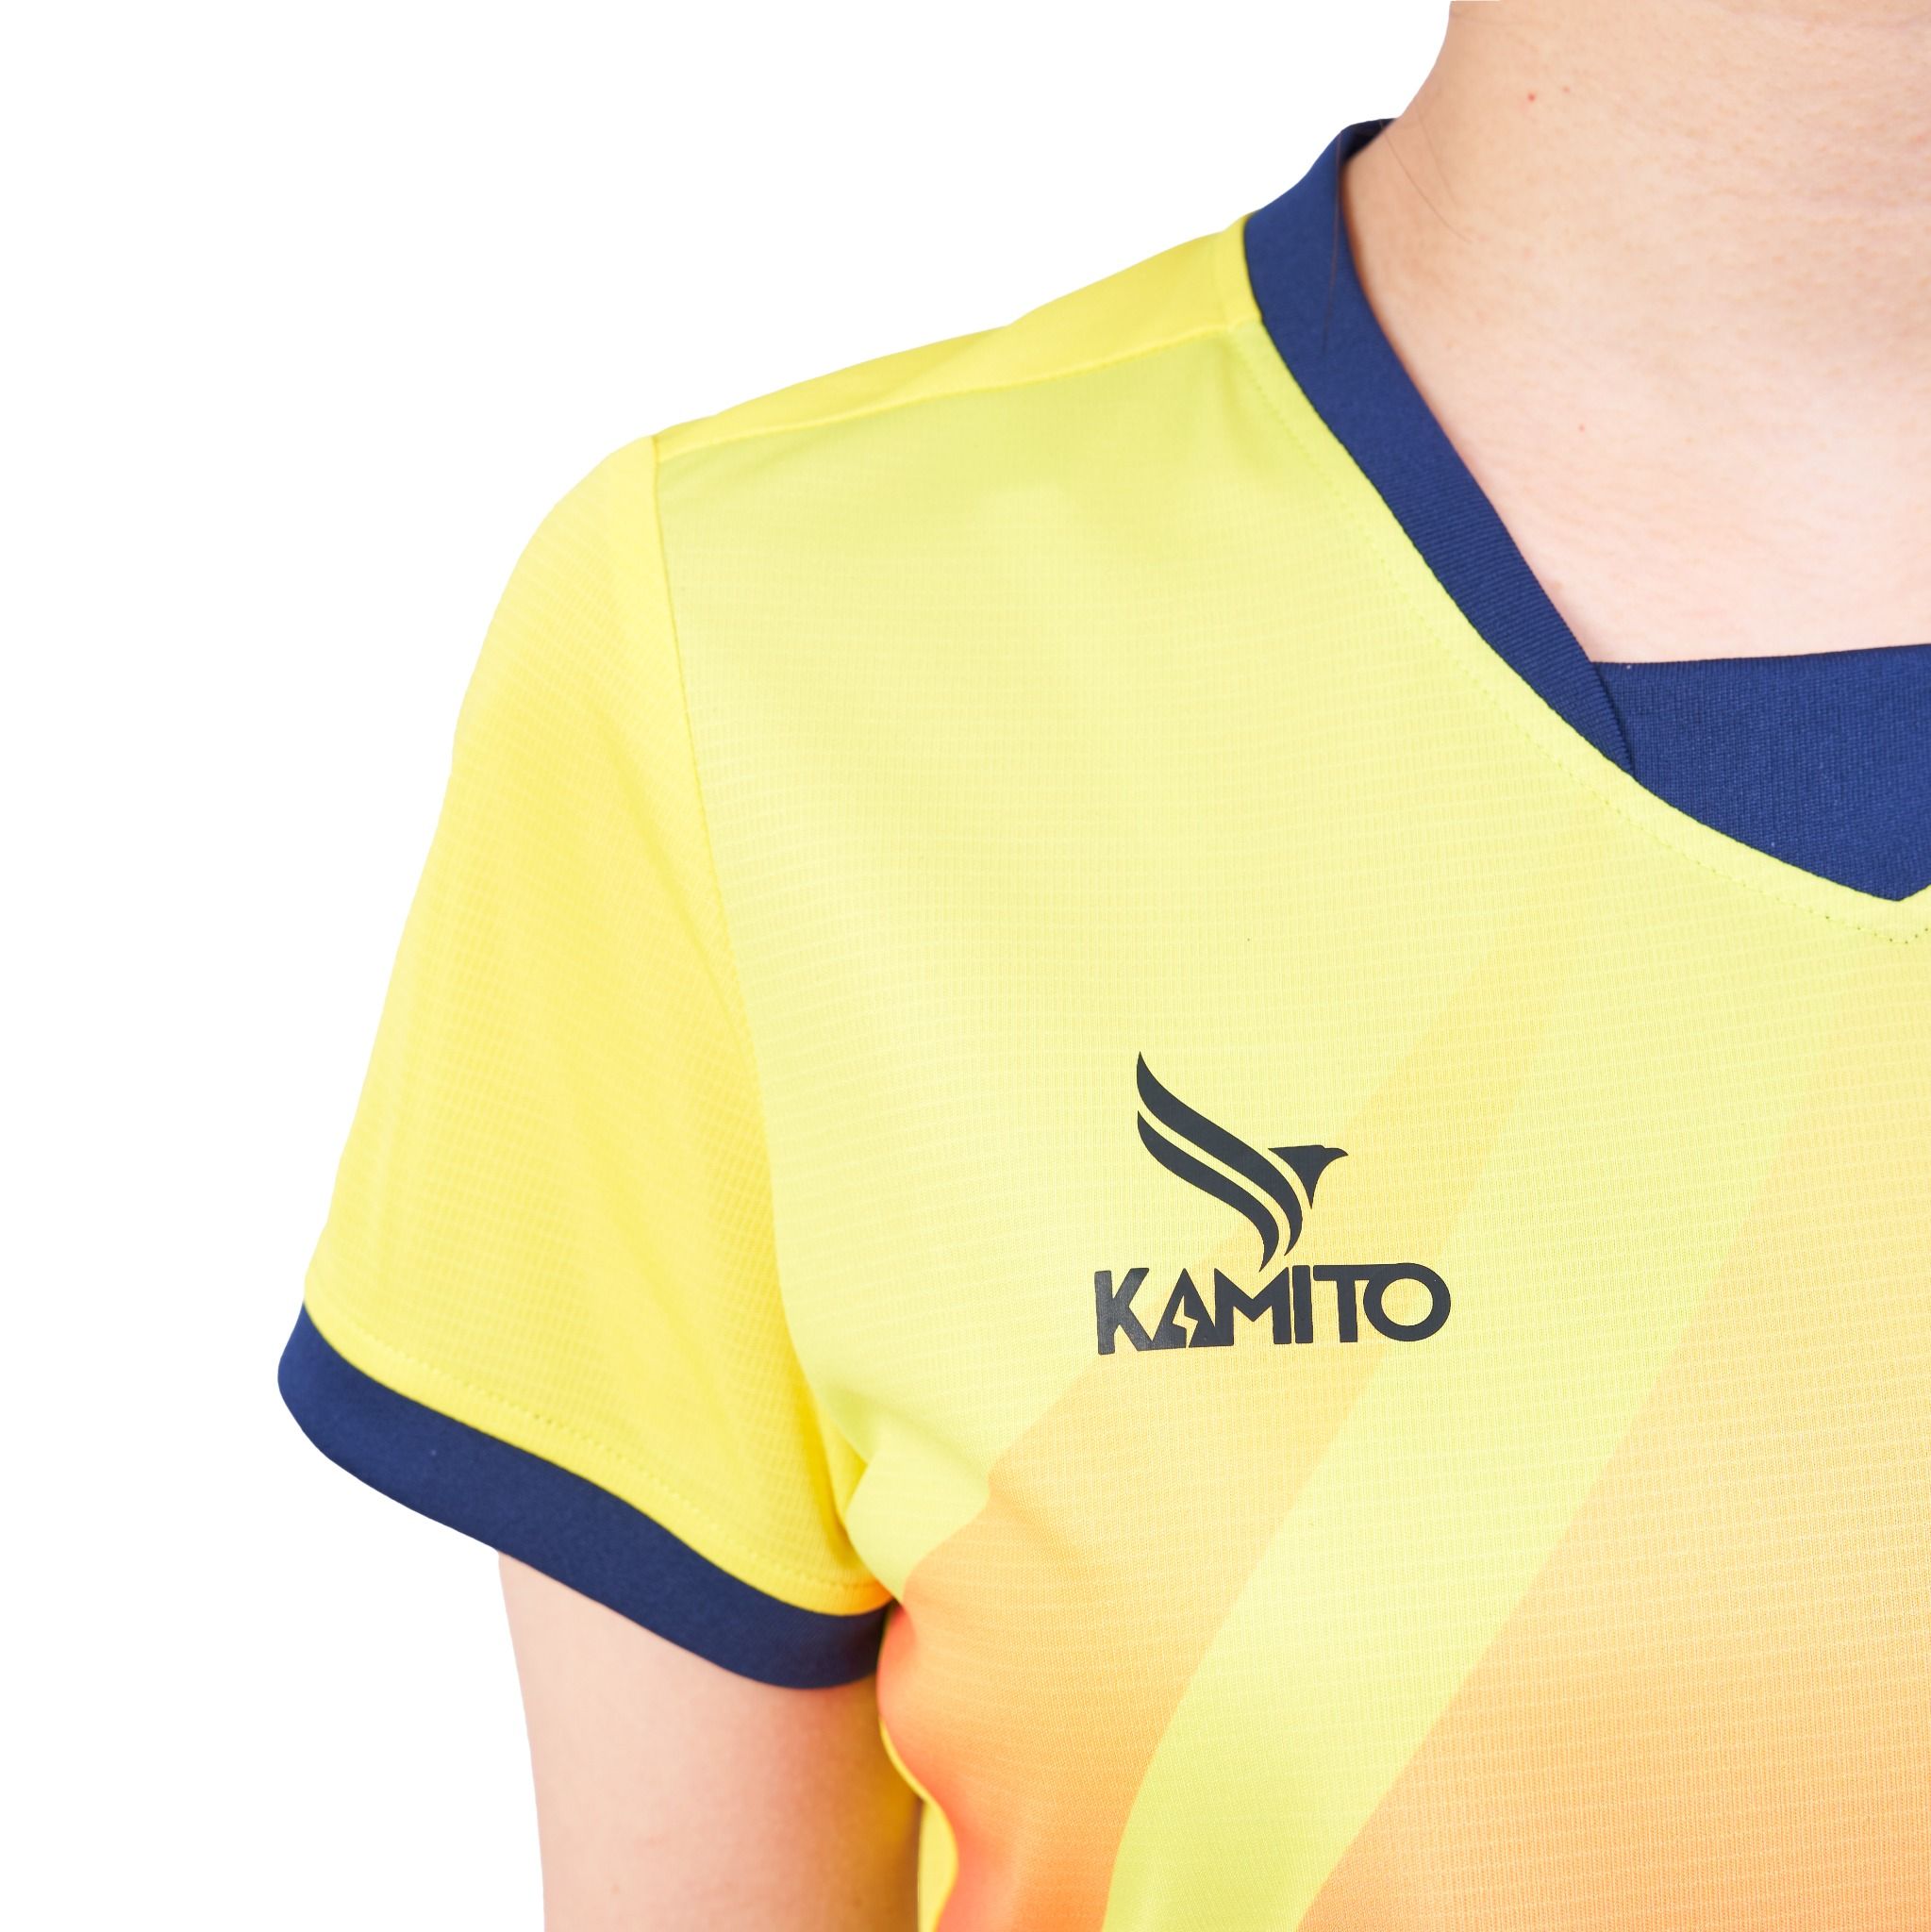  Bộ quần áo bóng chuyền Kamito Libero Nữ 